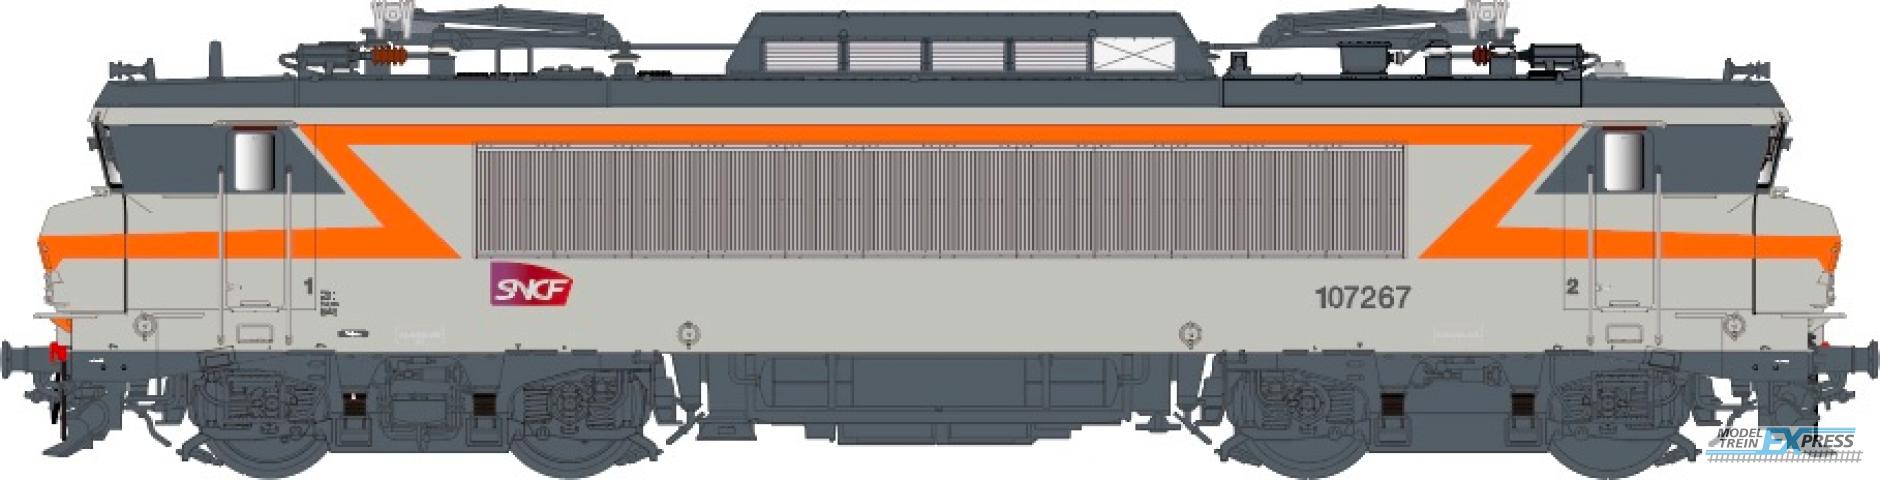 LS Models 11206 BB107267, betongrijs/oranje, Carmillon-logo, depot Toulouse / Ep. VI / SNCF / HO / DC / 1 P.